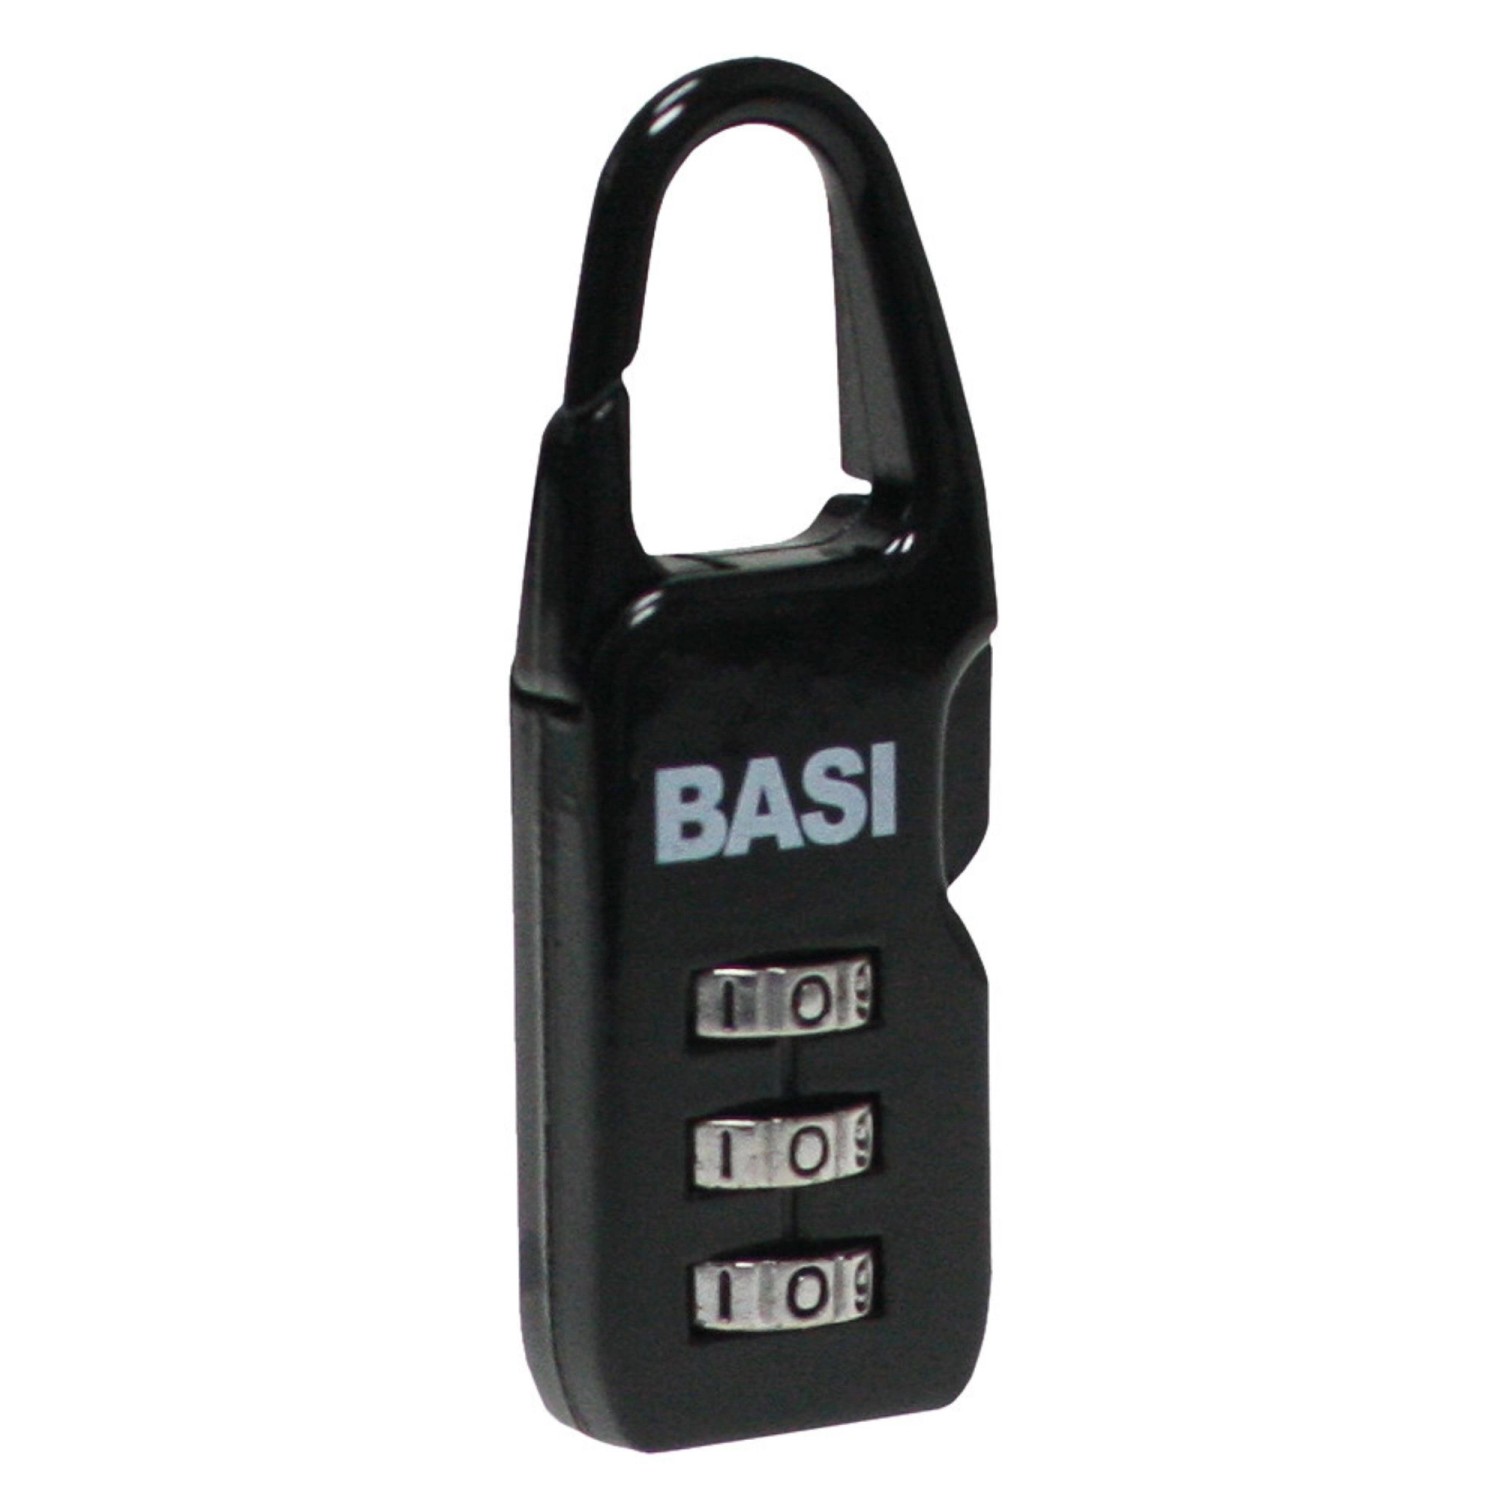 Basi - Kofferschloss - KS 615 - Schwarz - einstellbare Zahlenkombination - Aluminiumgehäuse